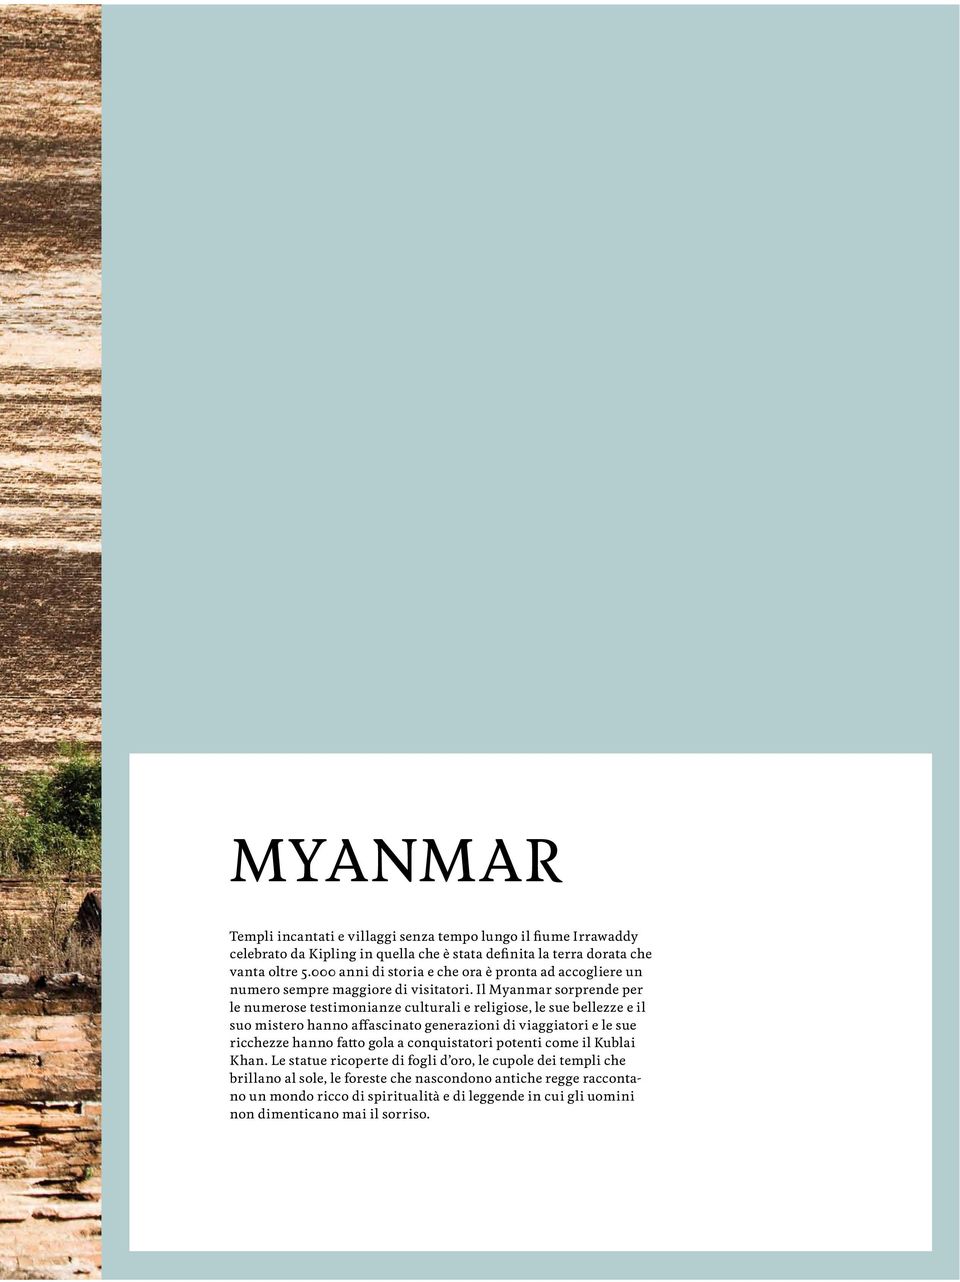 Il Myanmar sorprende per le numerose testimonianze culturali e religiose, le sue bellezze e il suo mistero hanno affasto generazioni di viaggiatori e le sue ricchezze hanno